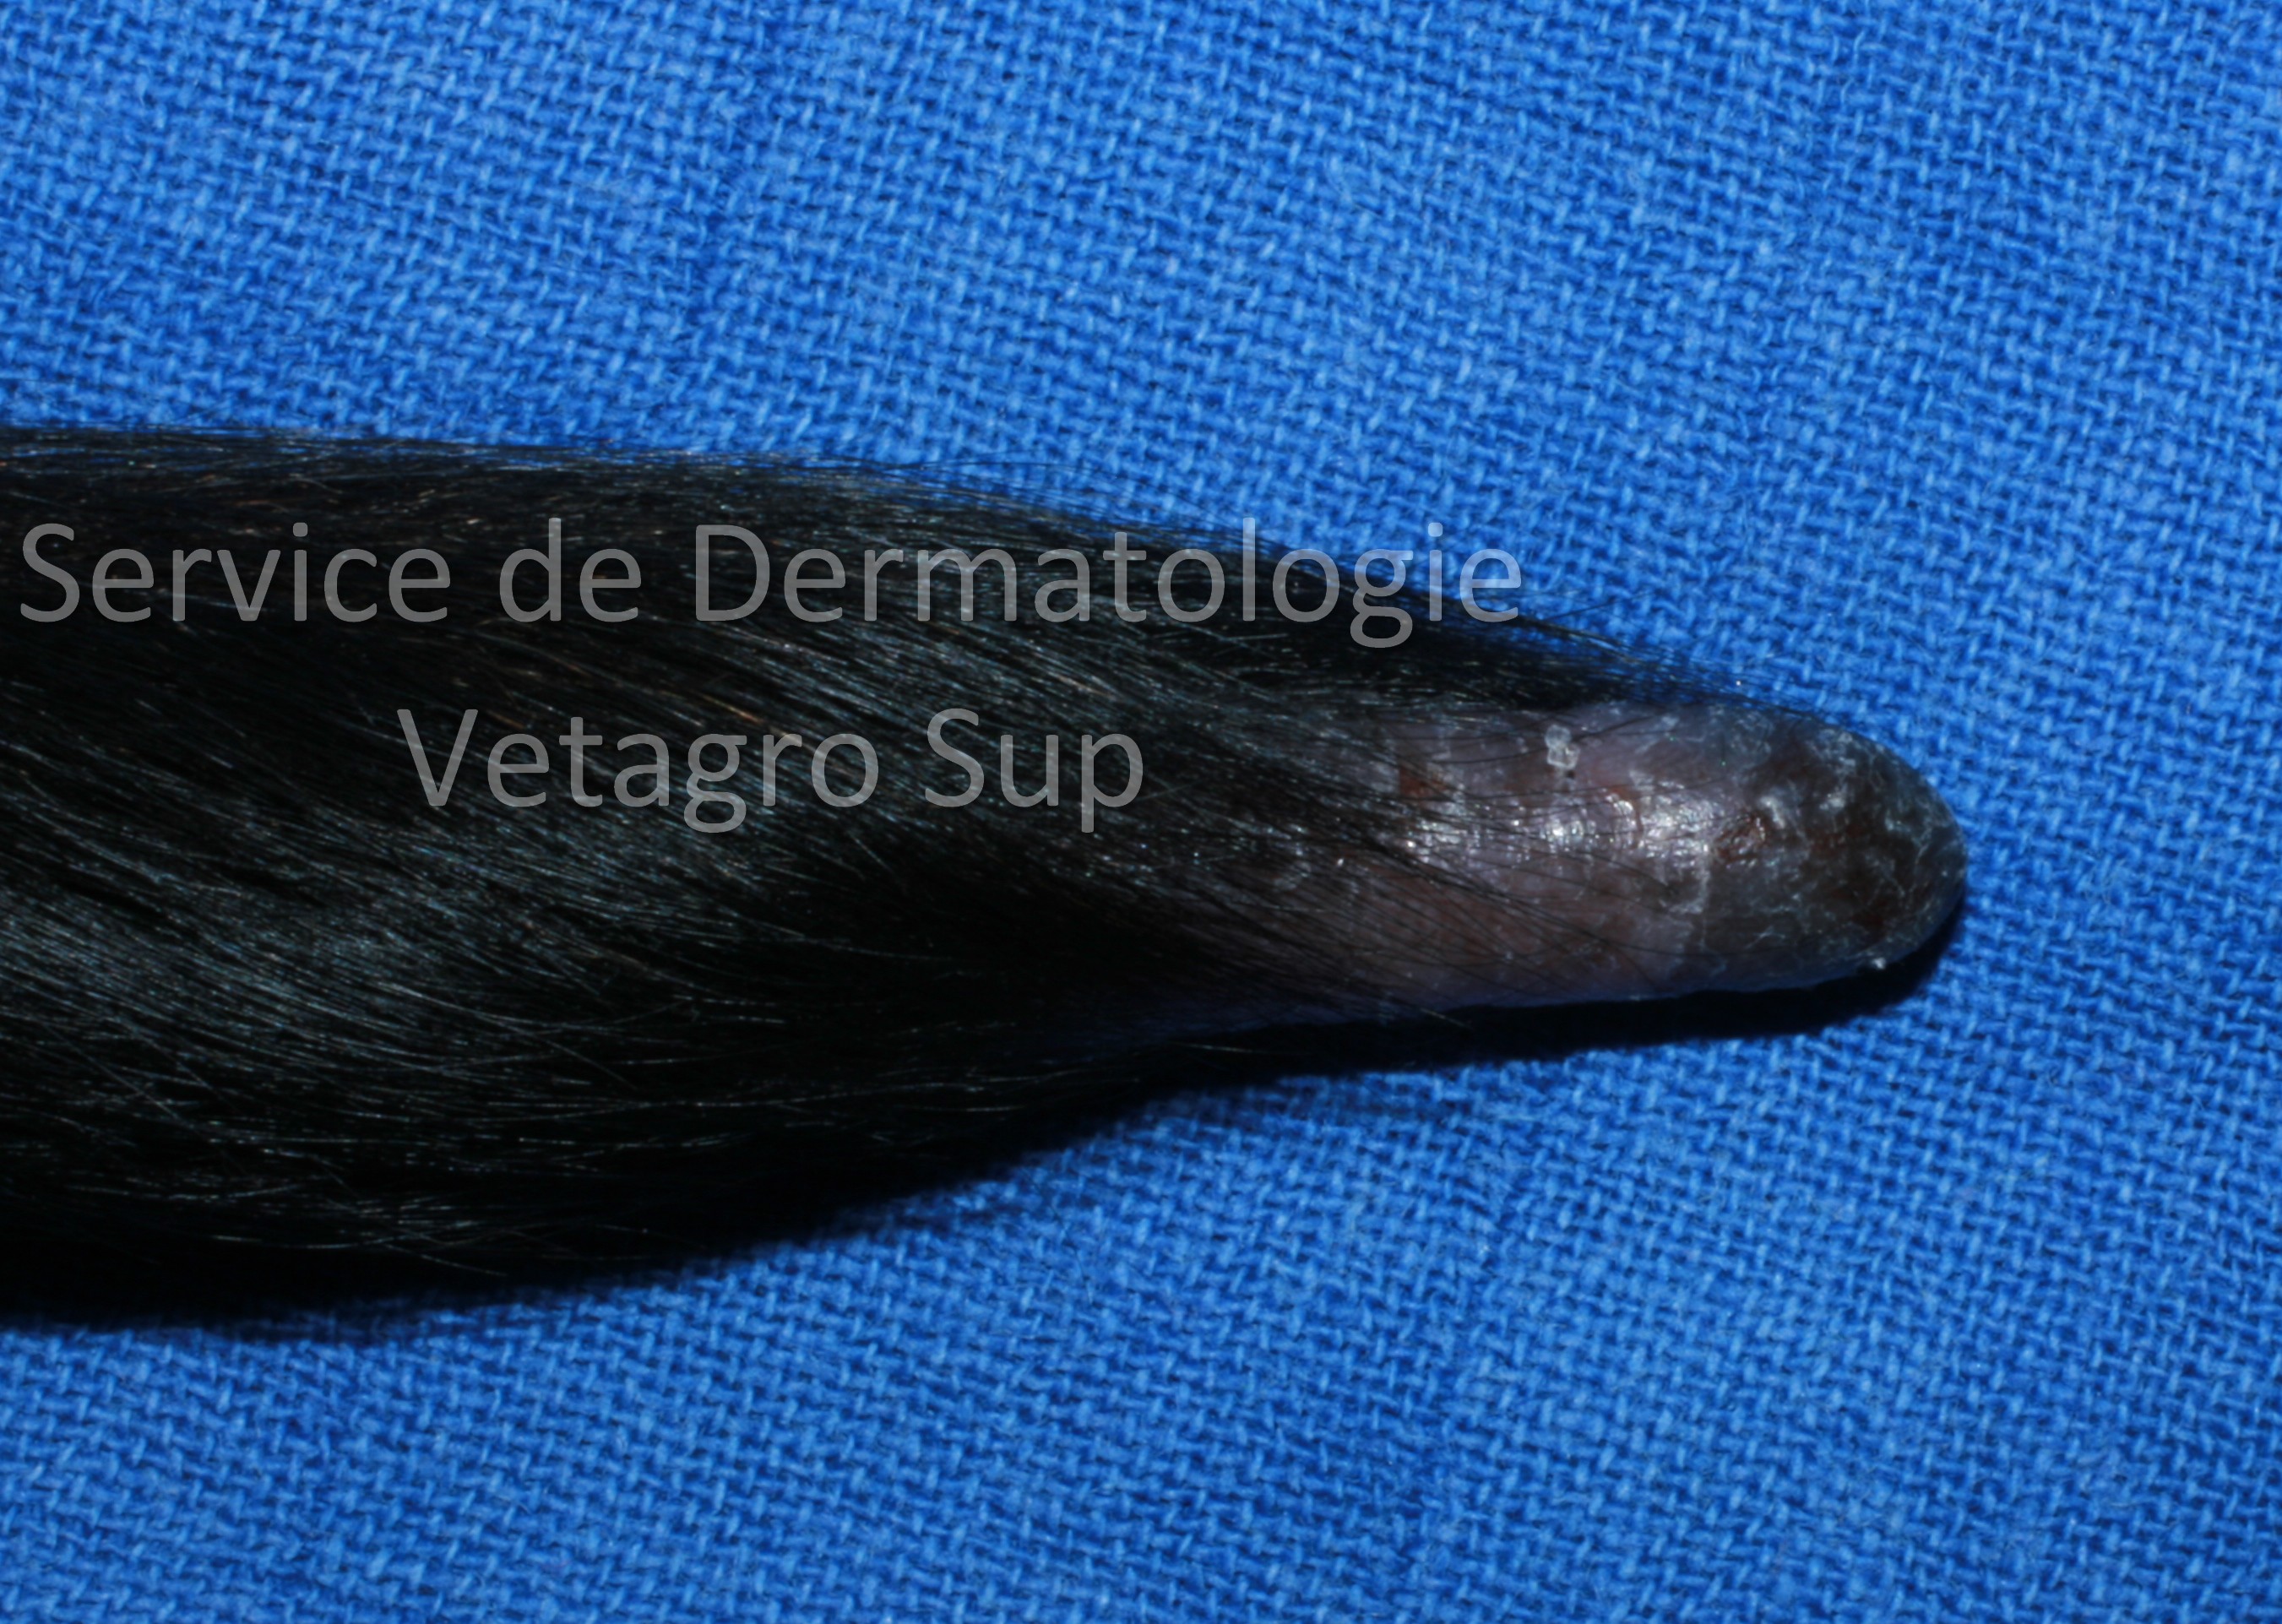 Lésions cutanées au niveau de l'extrémité distale de la queue chez un chien atteint de Dermatomyosite